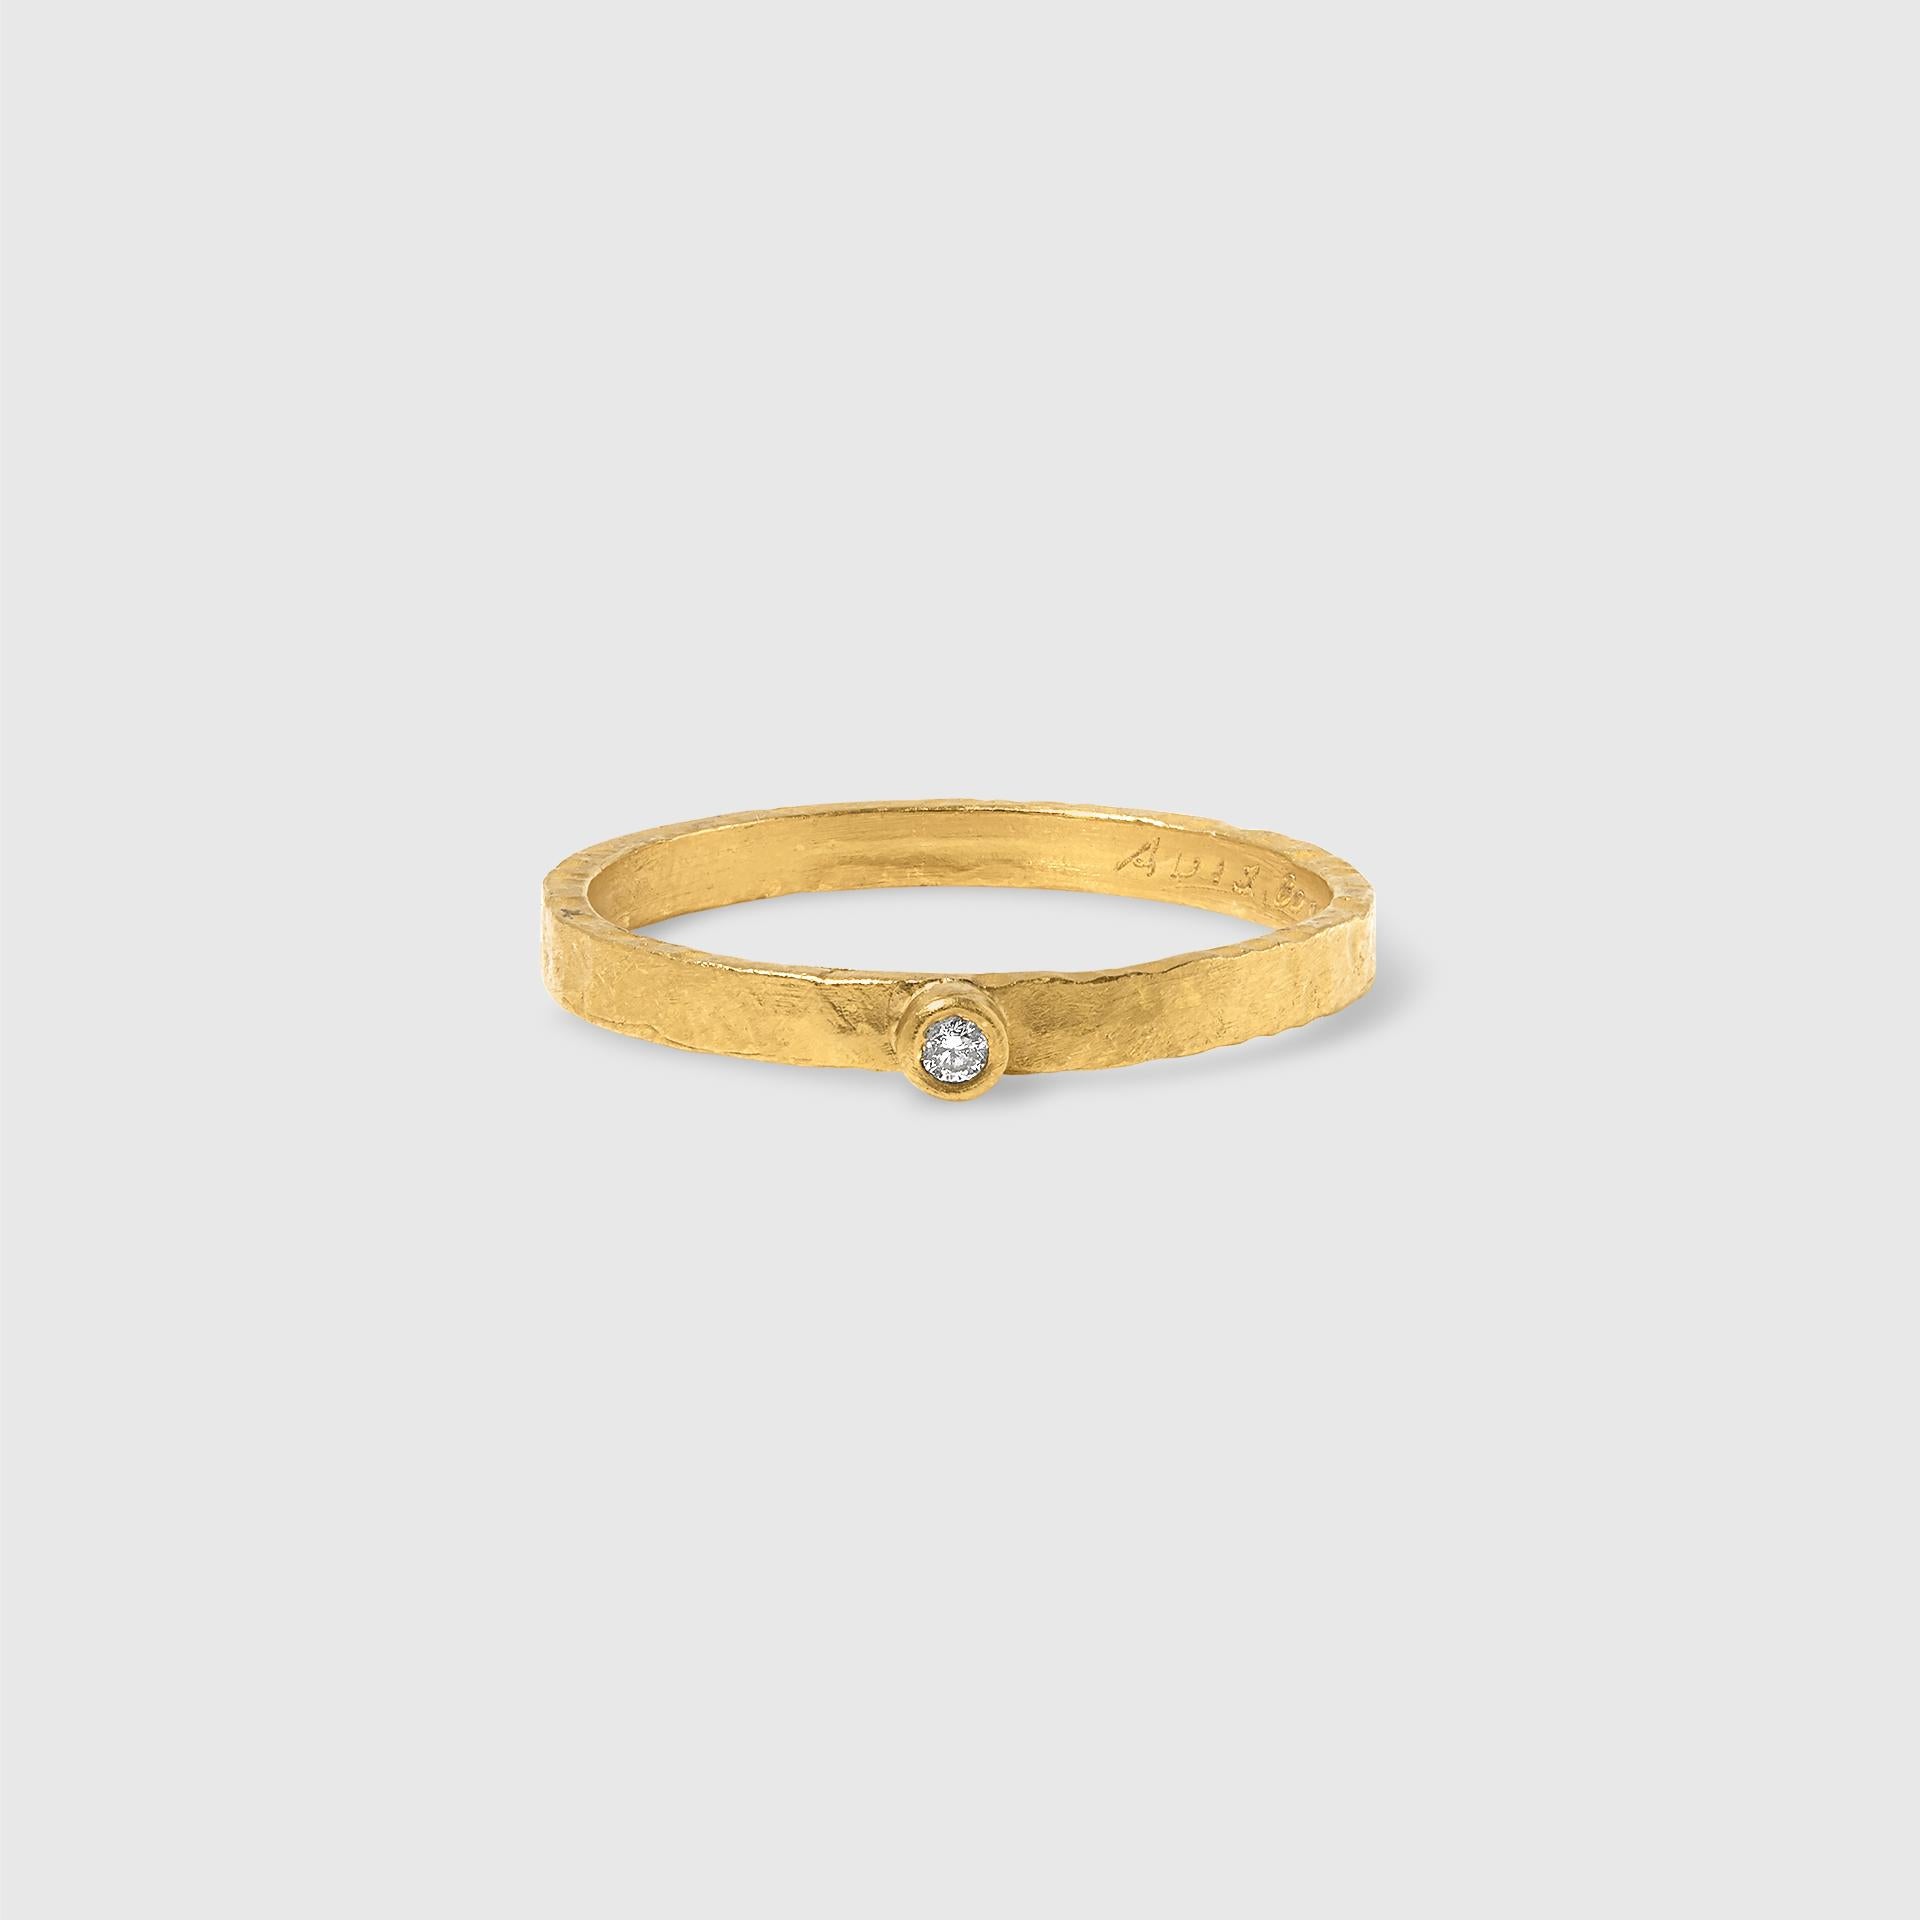 24kt Gelbgold (massiv) mit einzelnen Diamanten, stapelbarer Ring, handgefertigt von Prehistoric Works of Istanbul, Türkei, Ring: 24K Gold G995 - 2,88 Gramm (pro Stück), 1 Diamant - 0,02 Karat.  Das Angebot gilt nur für einen Ring.
(2 Stück in Größe